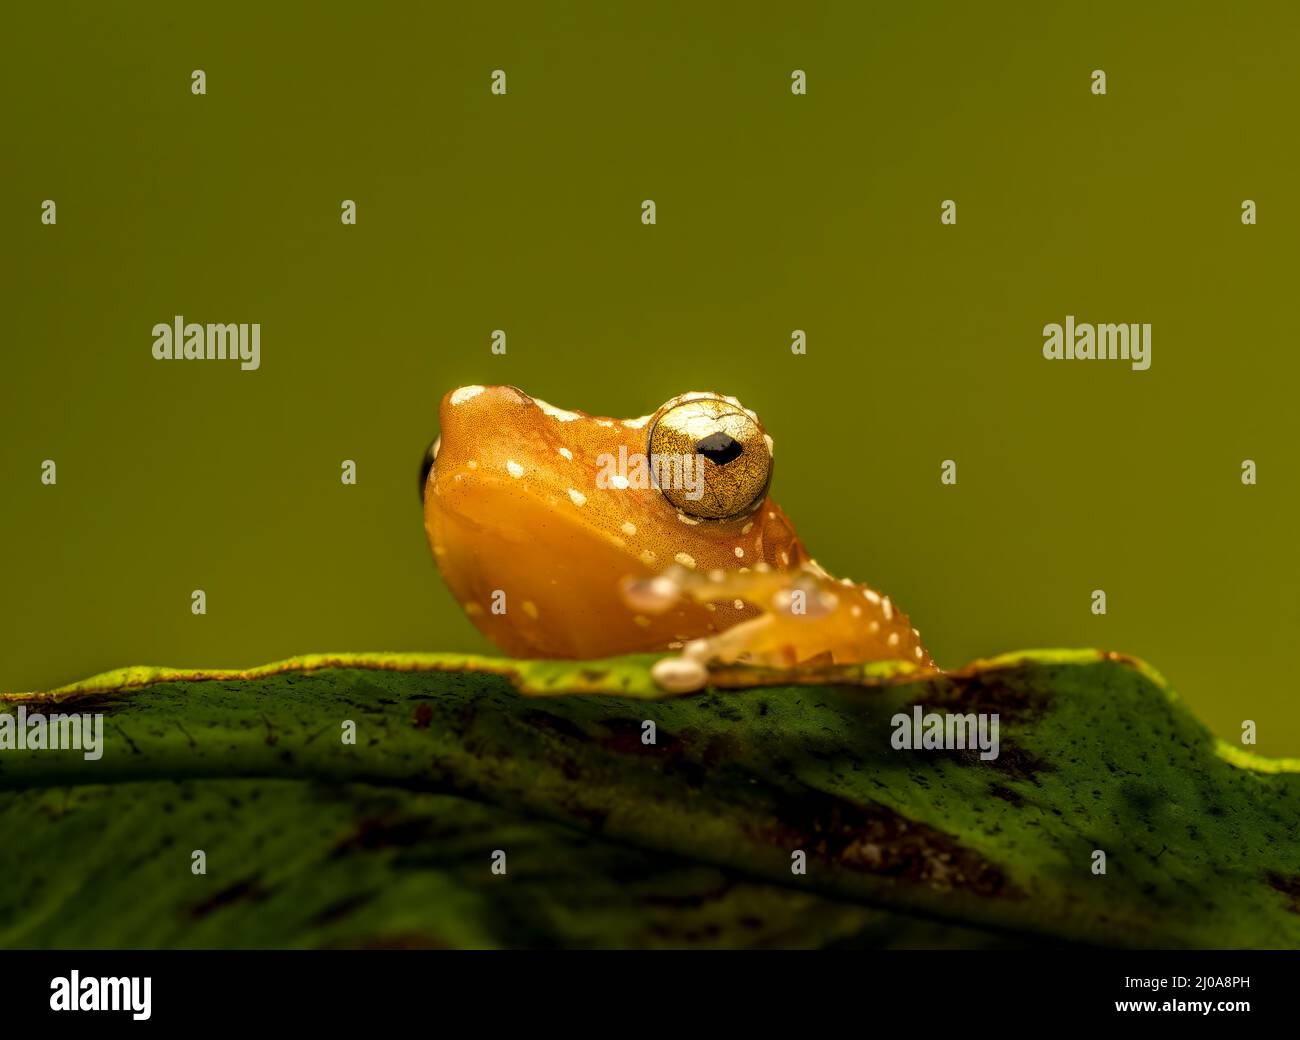 Una rana di cannella (Nyctixalus pictus), a riposo su una foglia verde fotografata su un fondo verde semplice Foto Stock